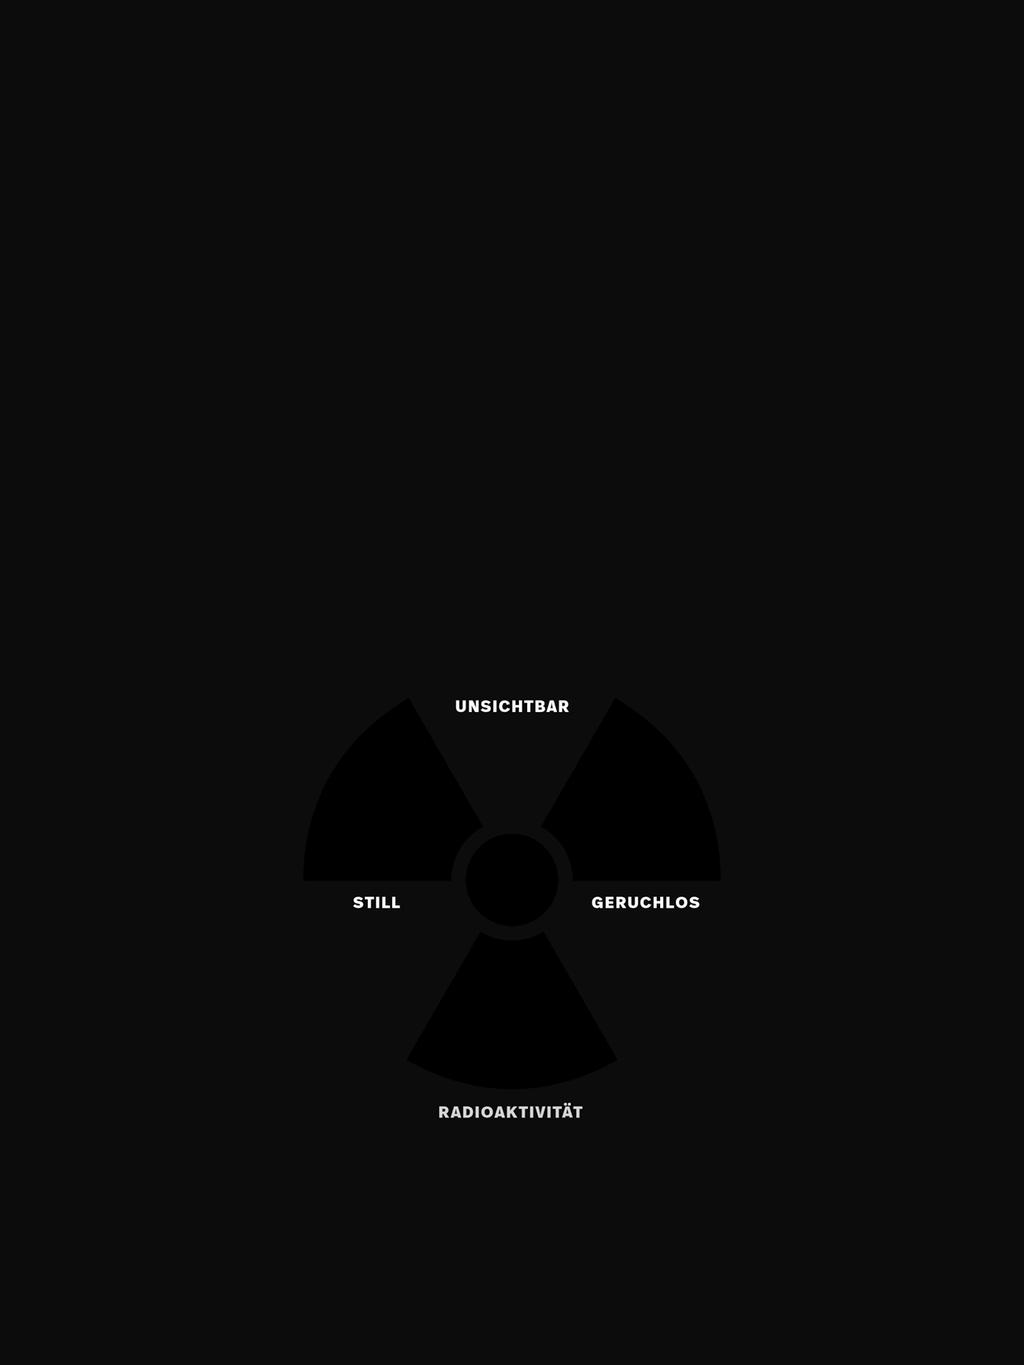 Nach dem Reaktorunfall von Fukushima beschloss der Deutsche Bundestag im Jahr 2011 mit breiter Mehrheit den endgültigen Ausstieg aus der Kernenergie.